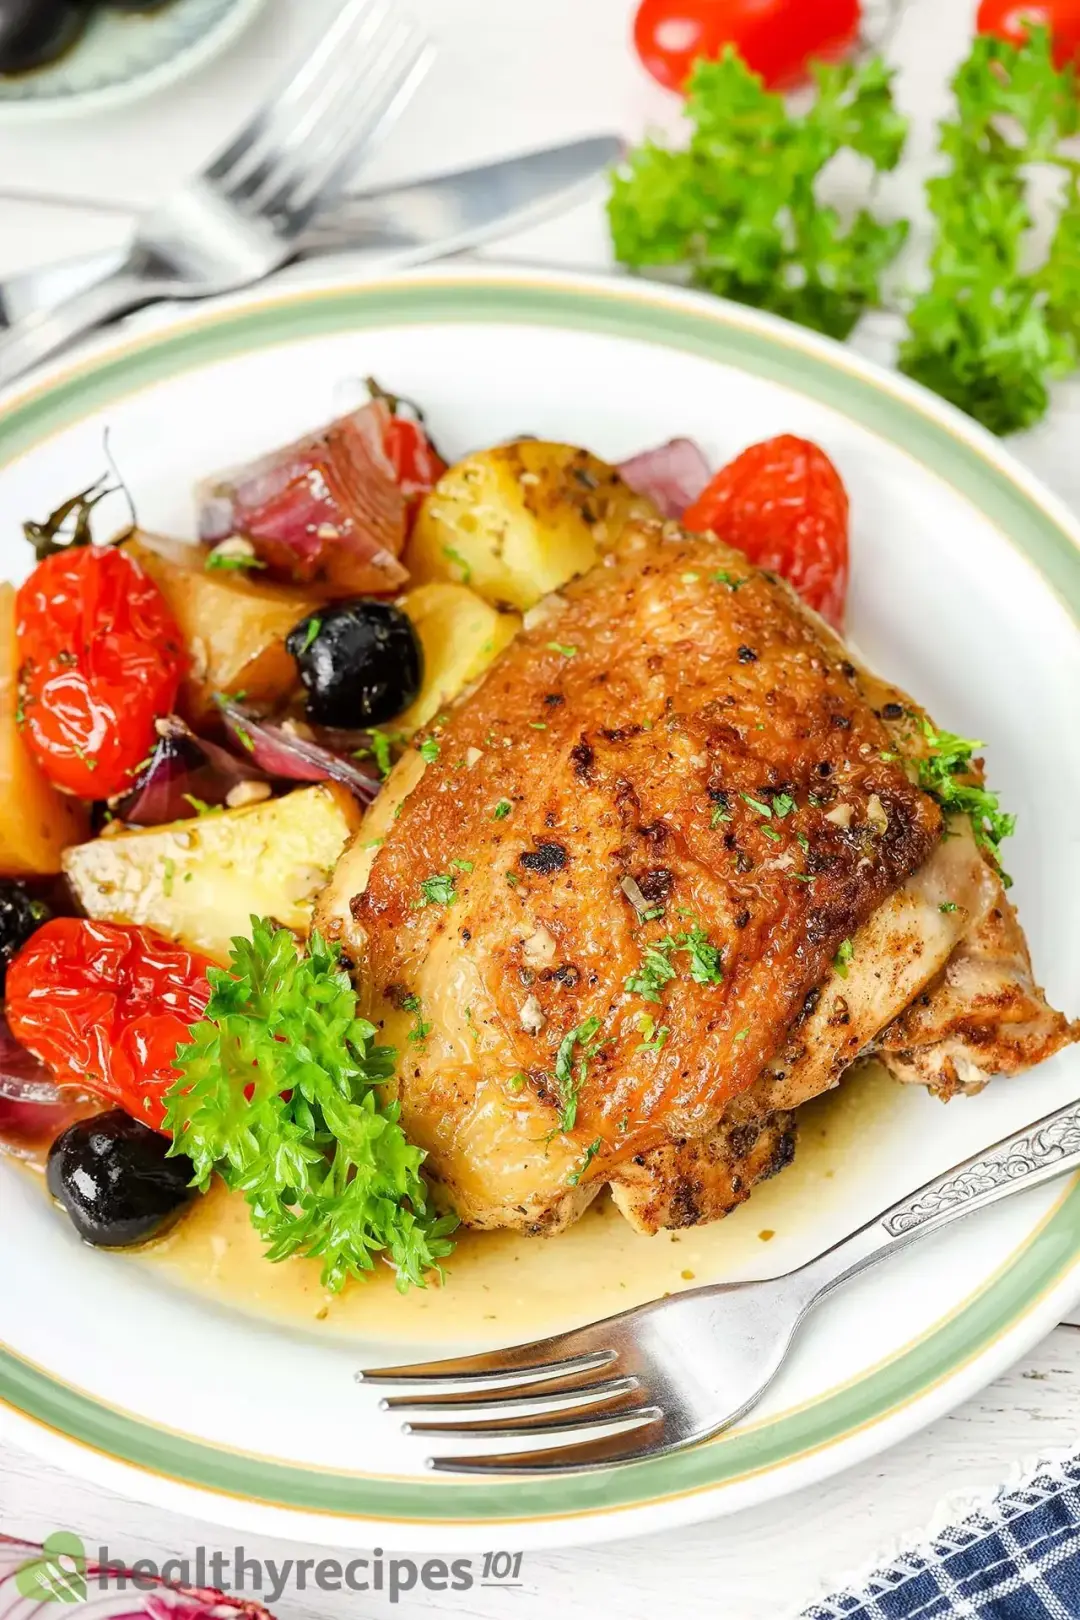 Is Mediterranean Chicken Healthy